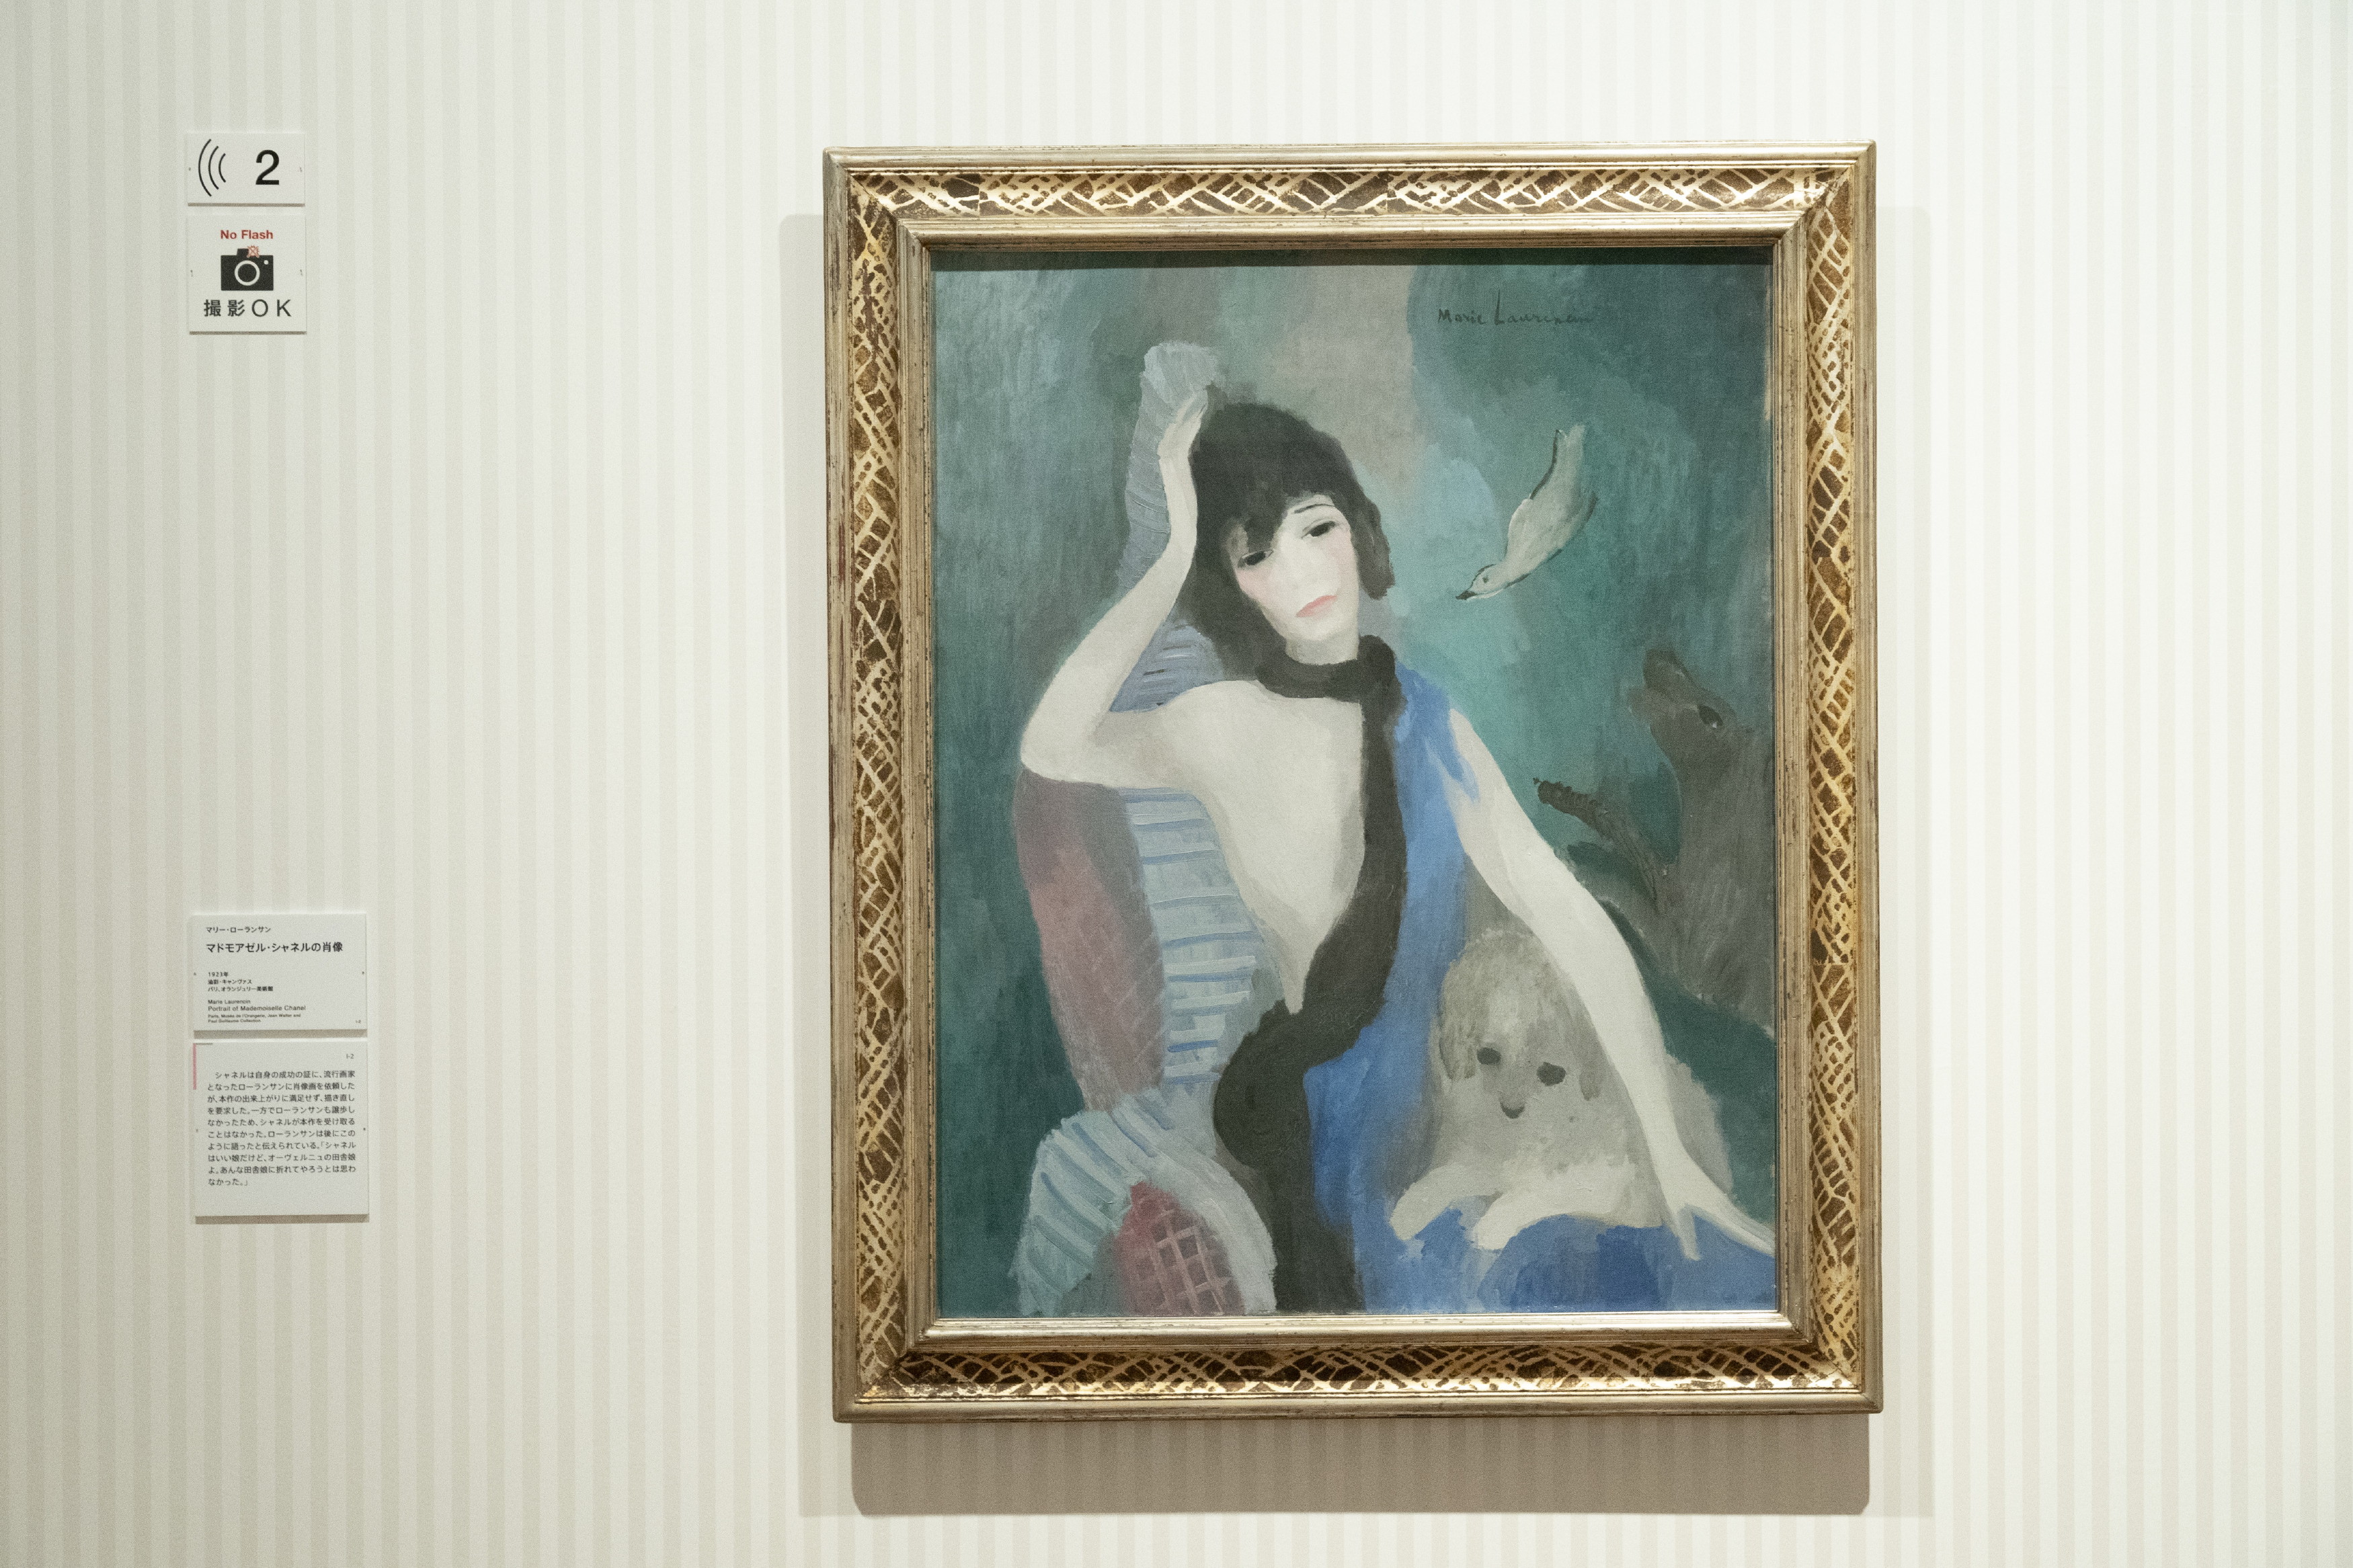 マリー・ローランサン「マドモアゼル・シャネルの肖像」1923年 油彩/キャンヴァス パリ、オランジュリー美術館